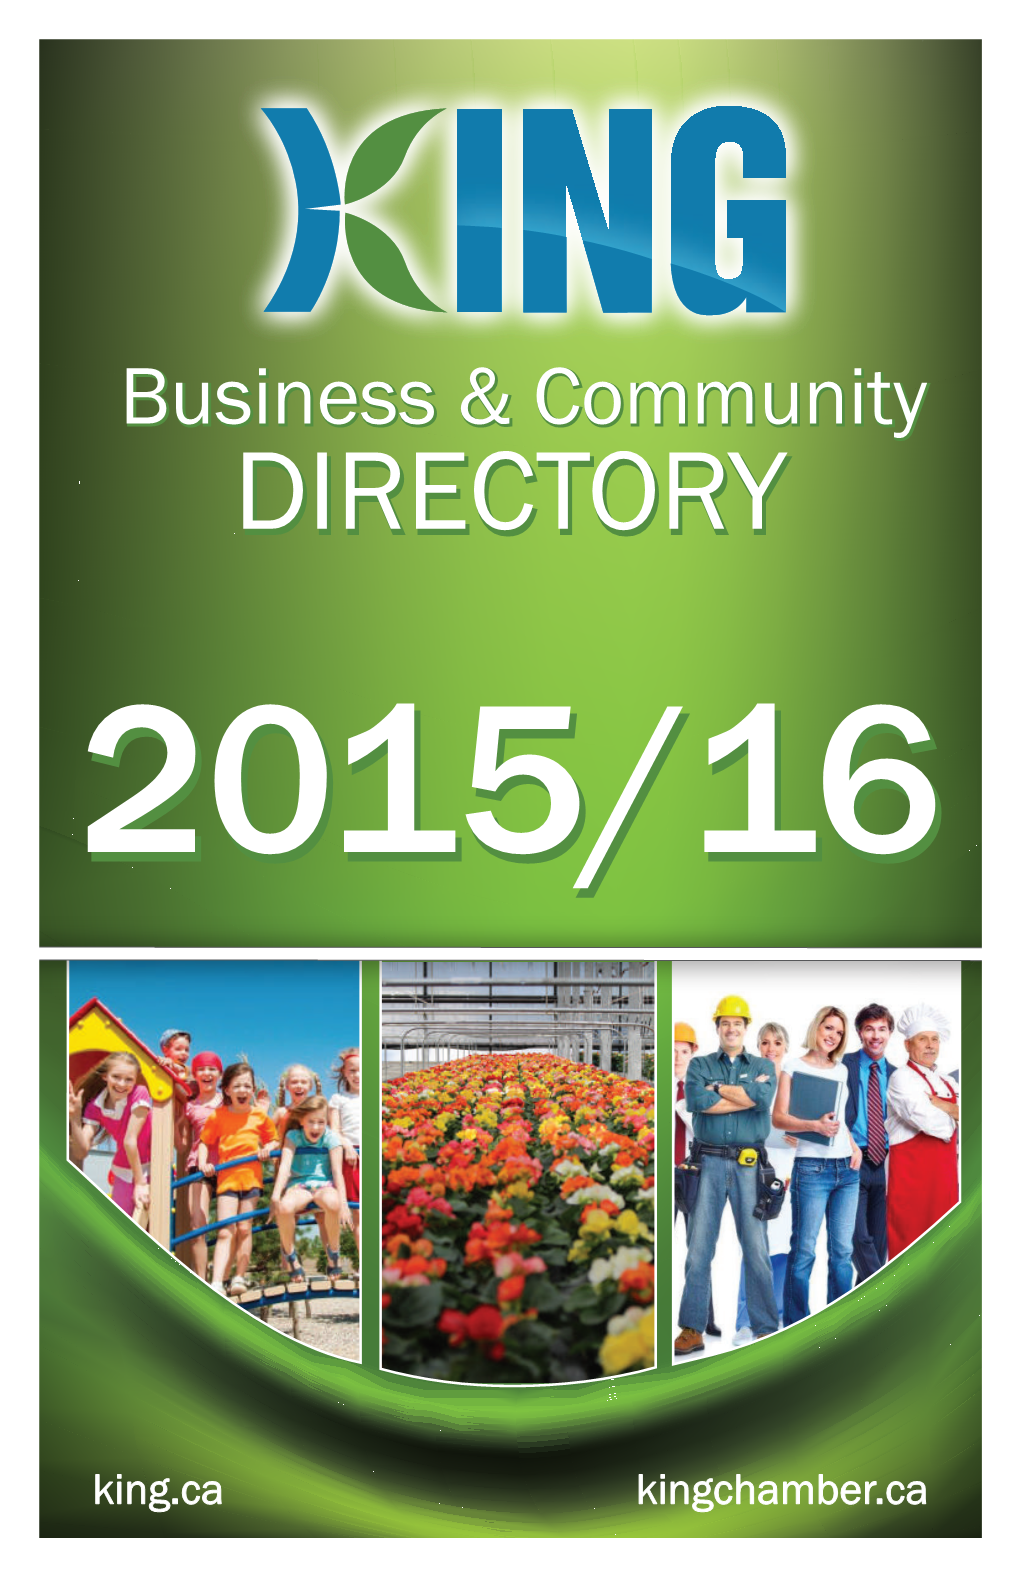 Directorydirectory 2015/162015/16